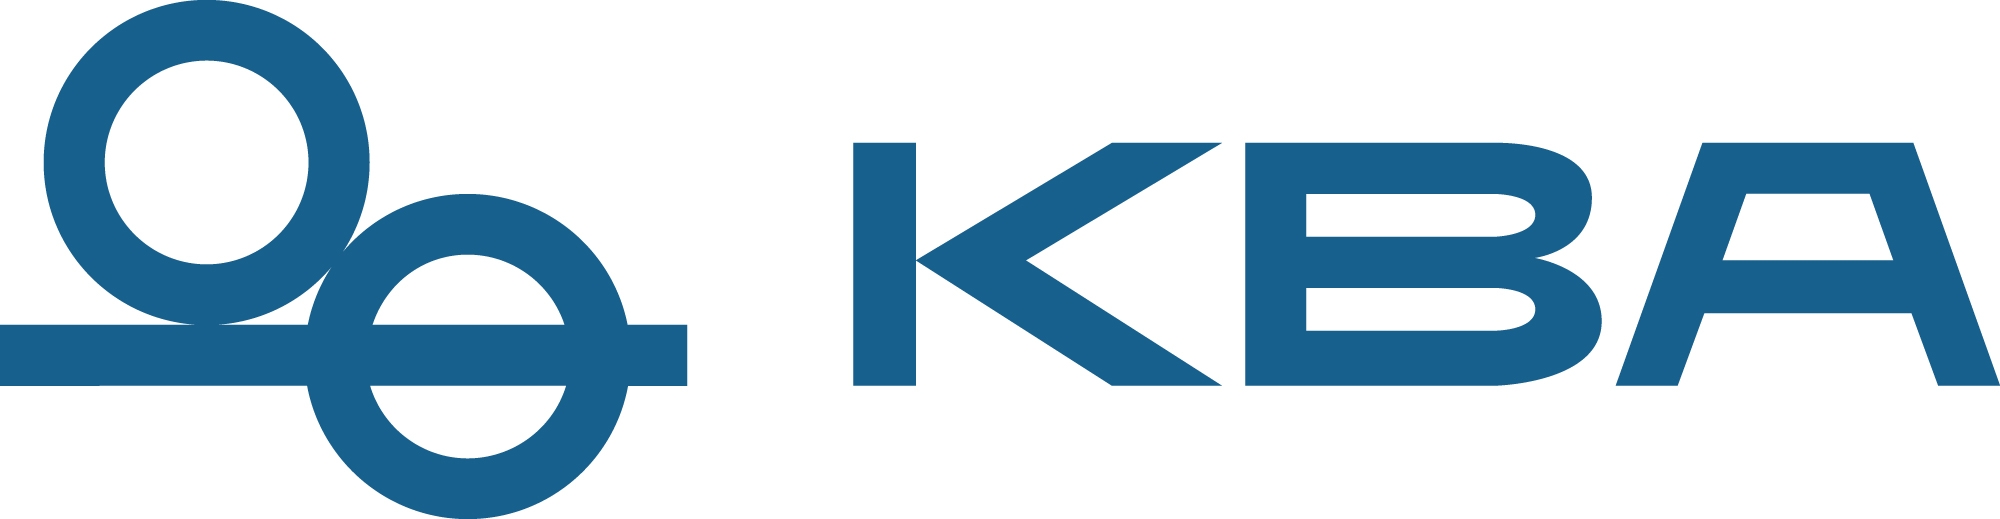 kba_logo